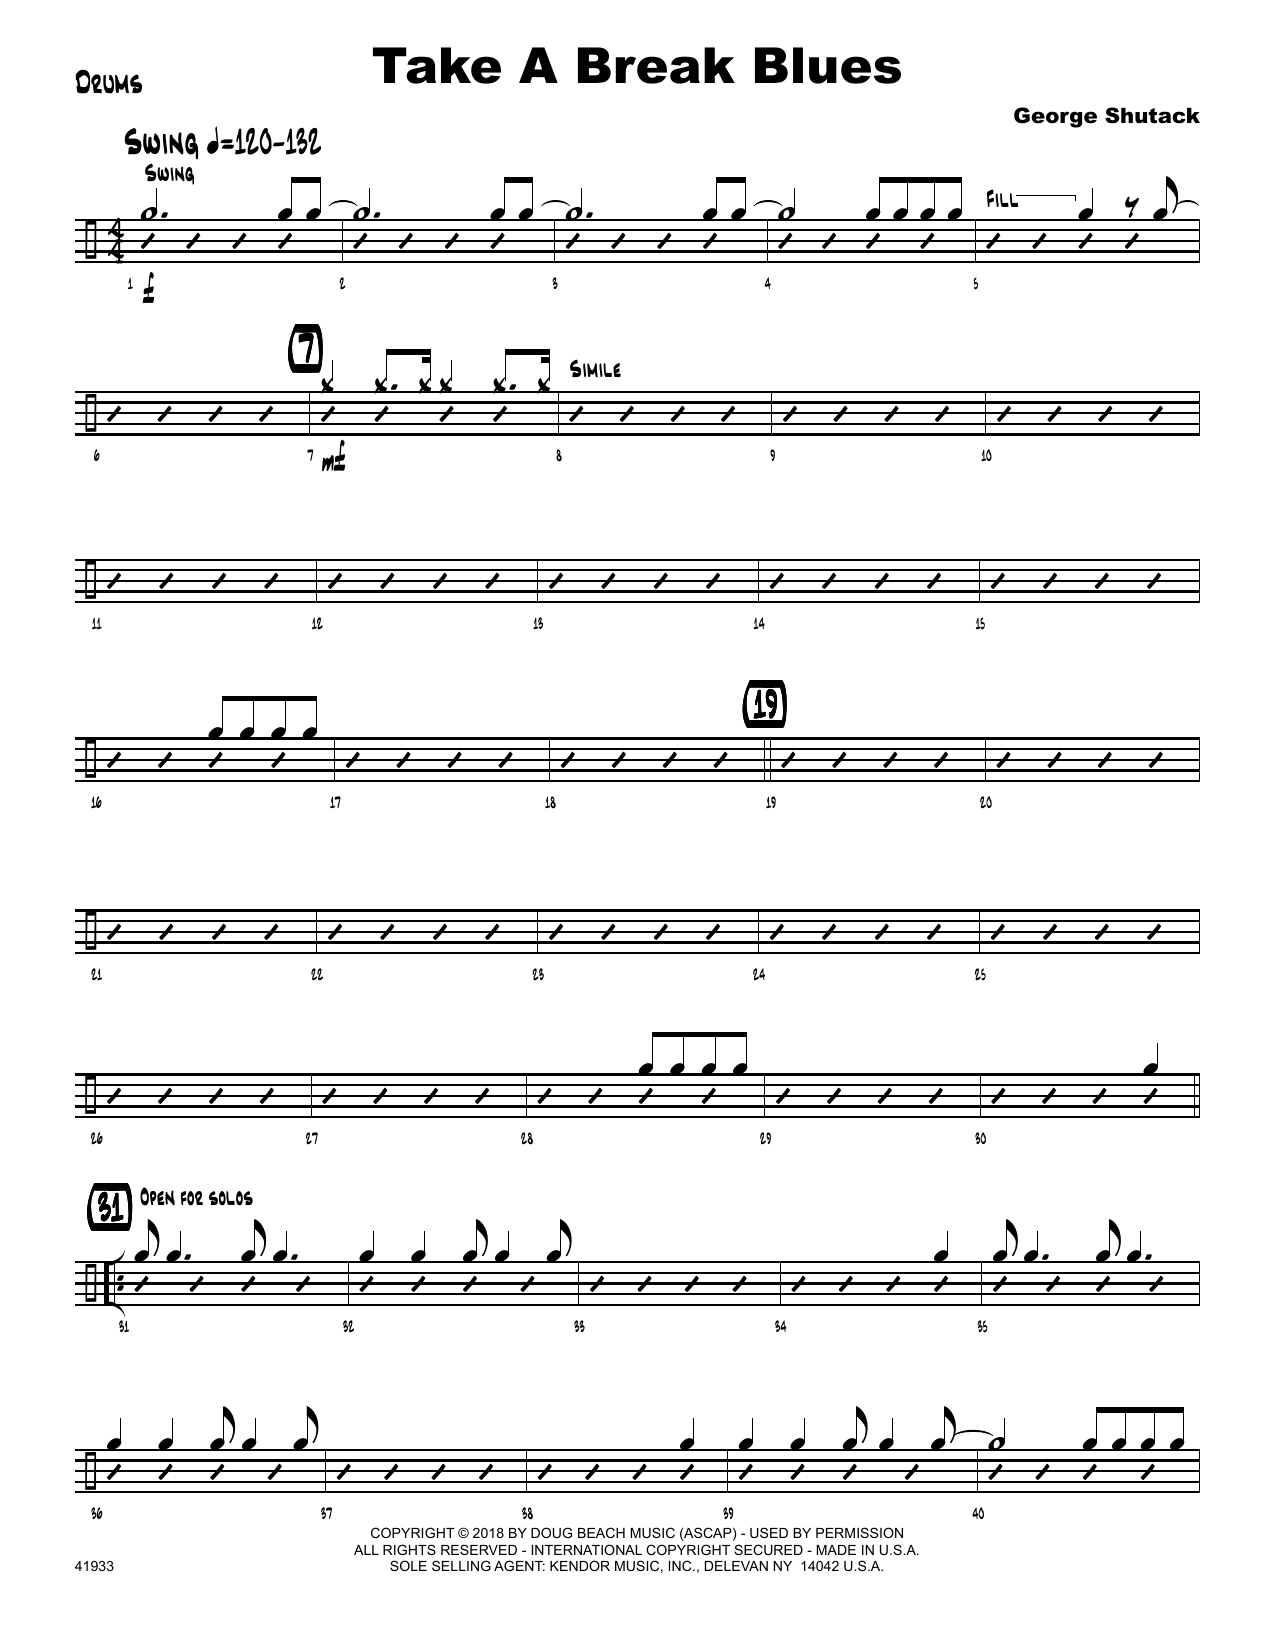 Download George Shutack Take A Break Blues - Drum Set Sheet Music